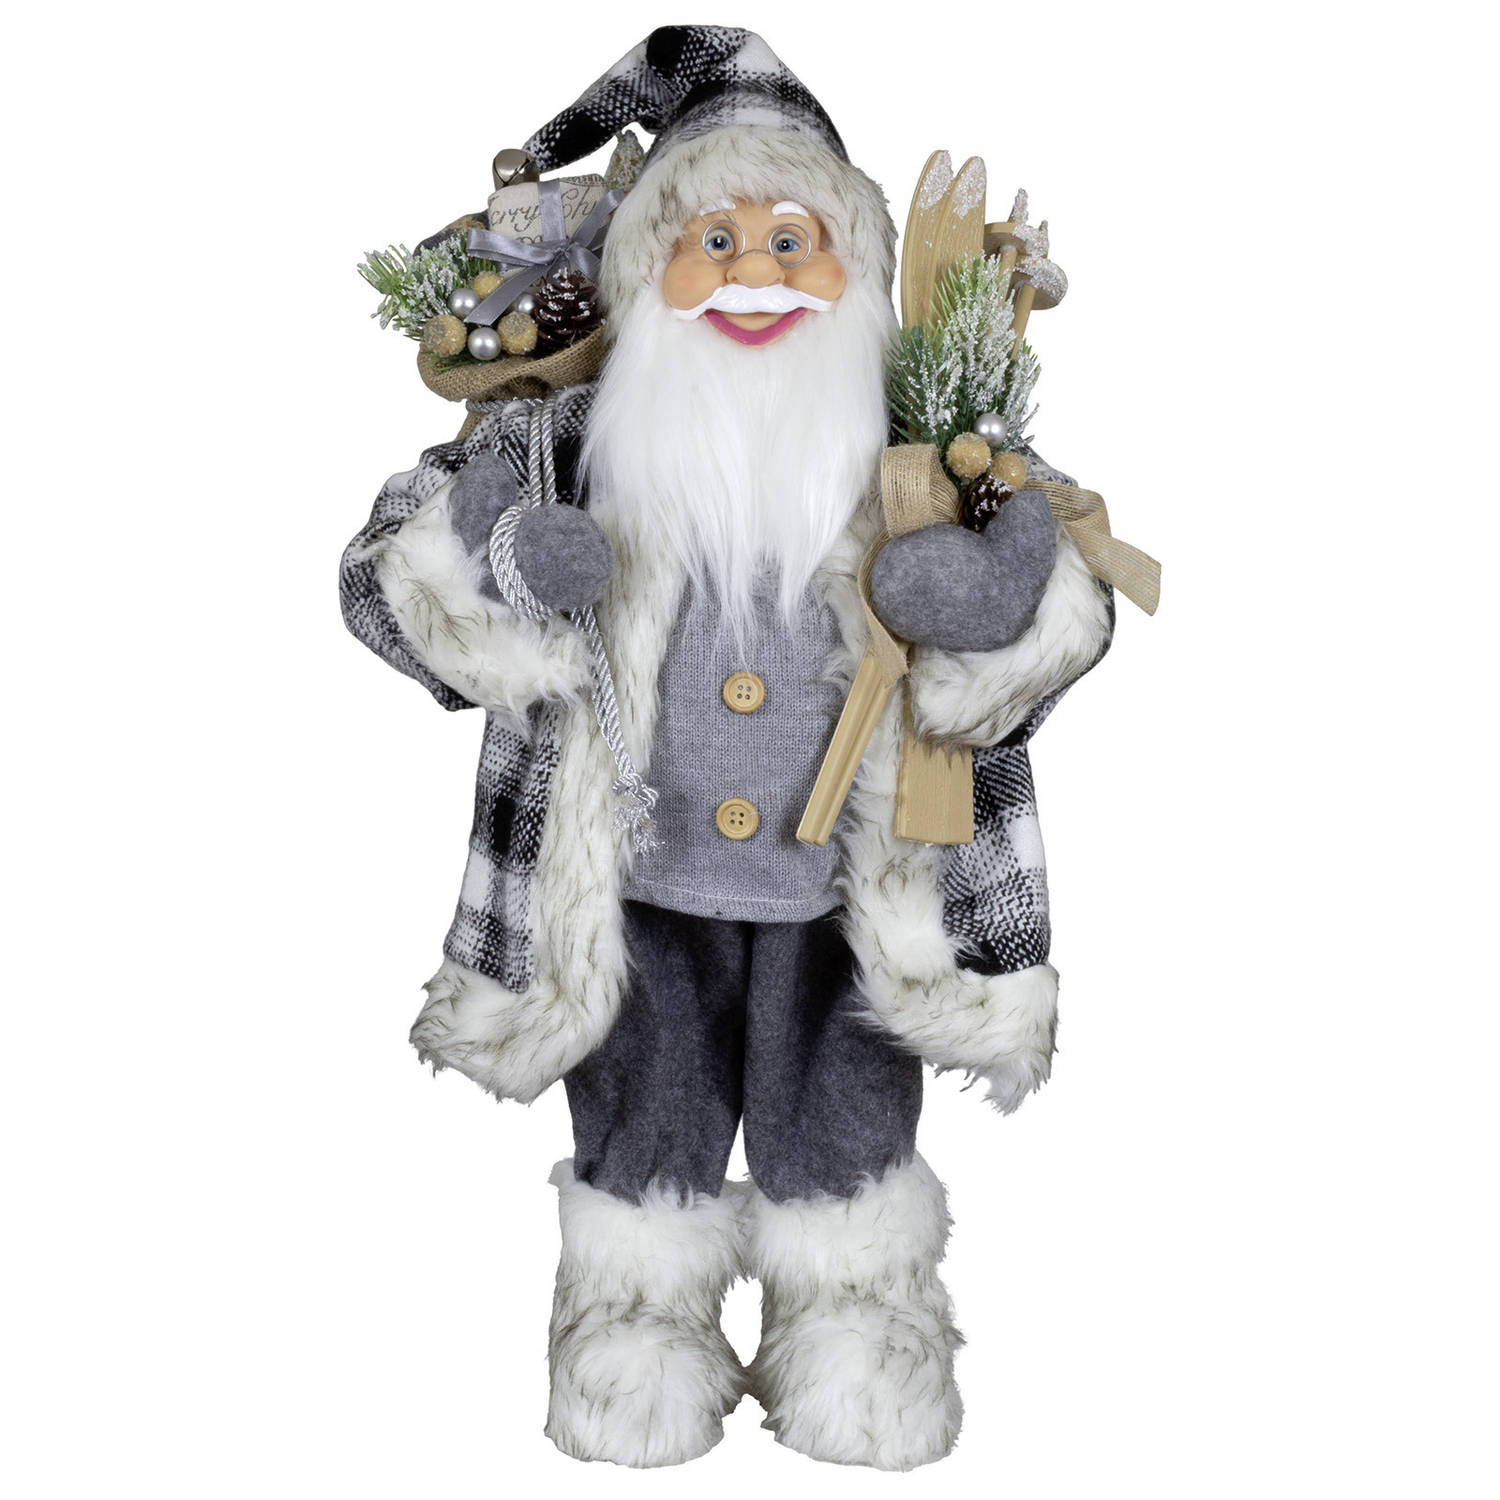 Kerstman decoratie pop - Tinus - H60 cm - grijs - staand - kerst beeld - kerst figuur